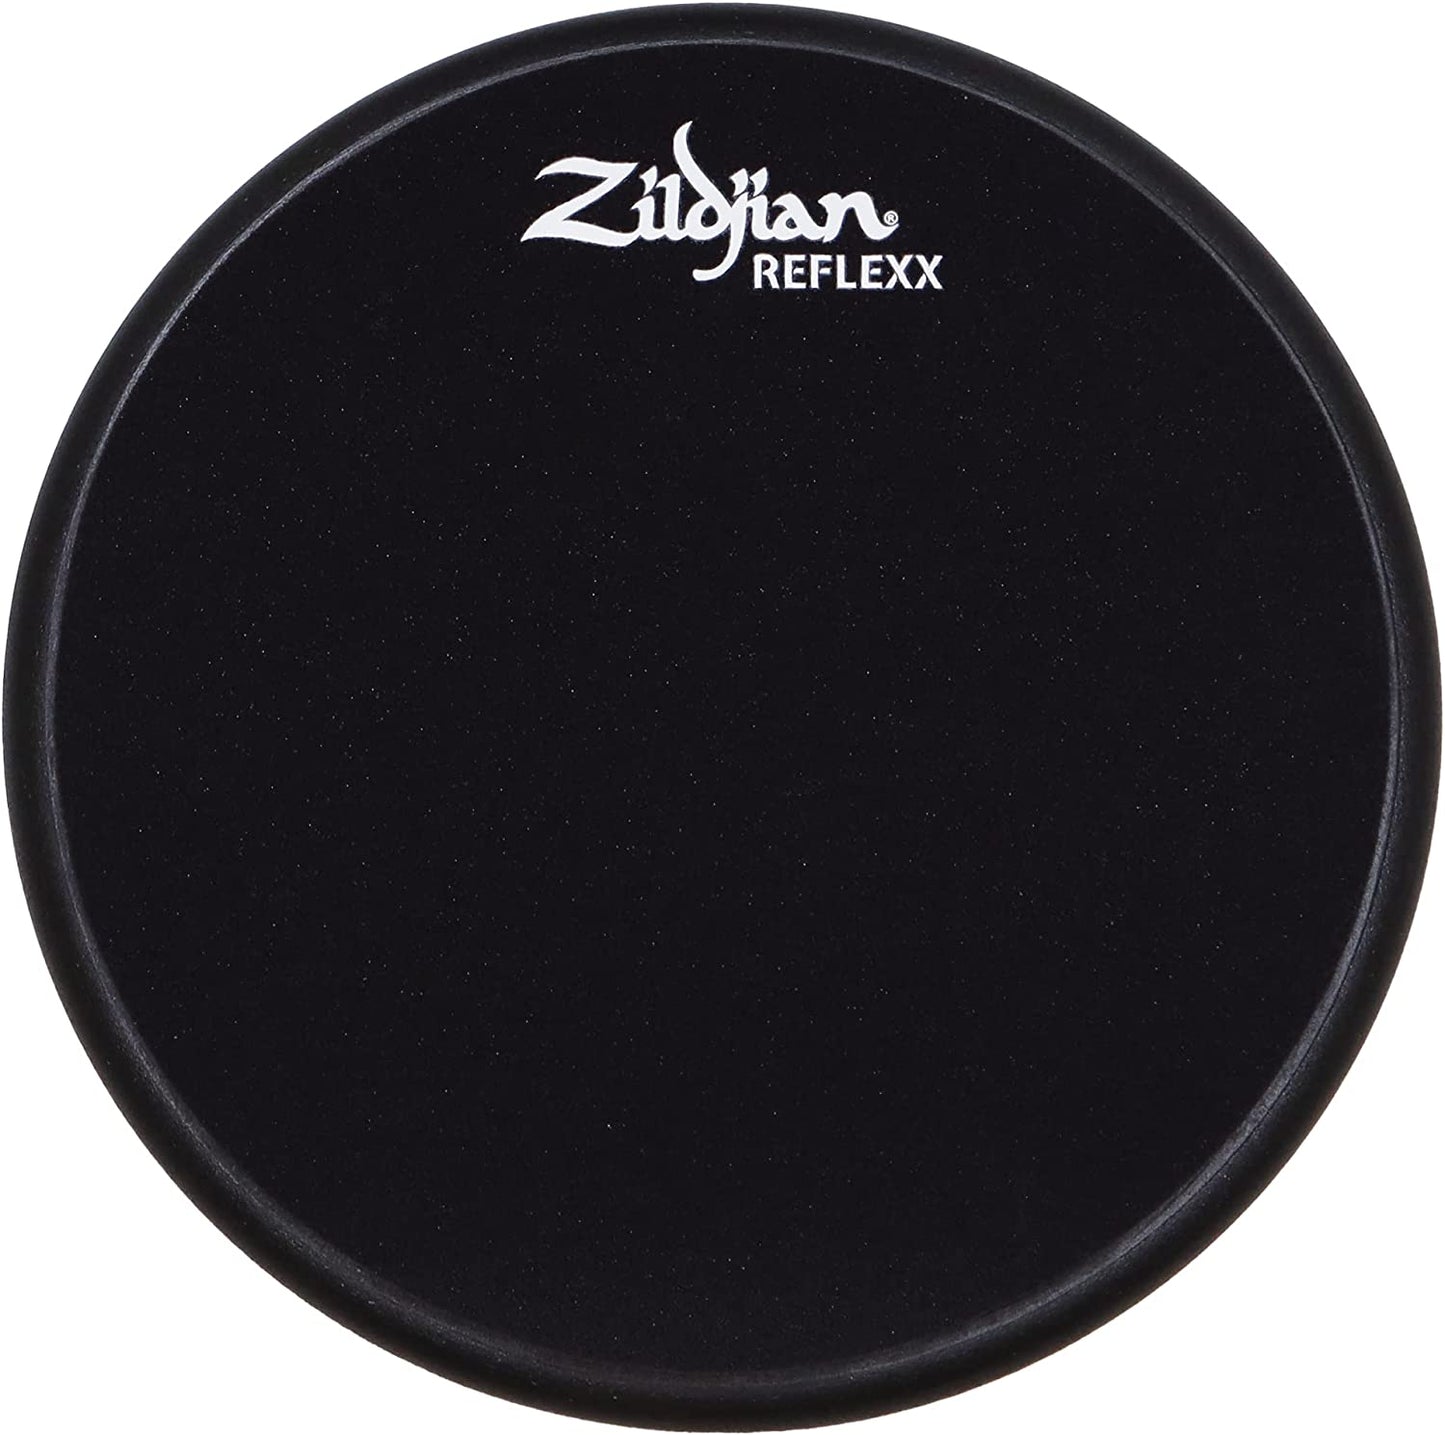 Zildjian ZXPPRCP10 Reflexx Conditioning Practice Pad-10in